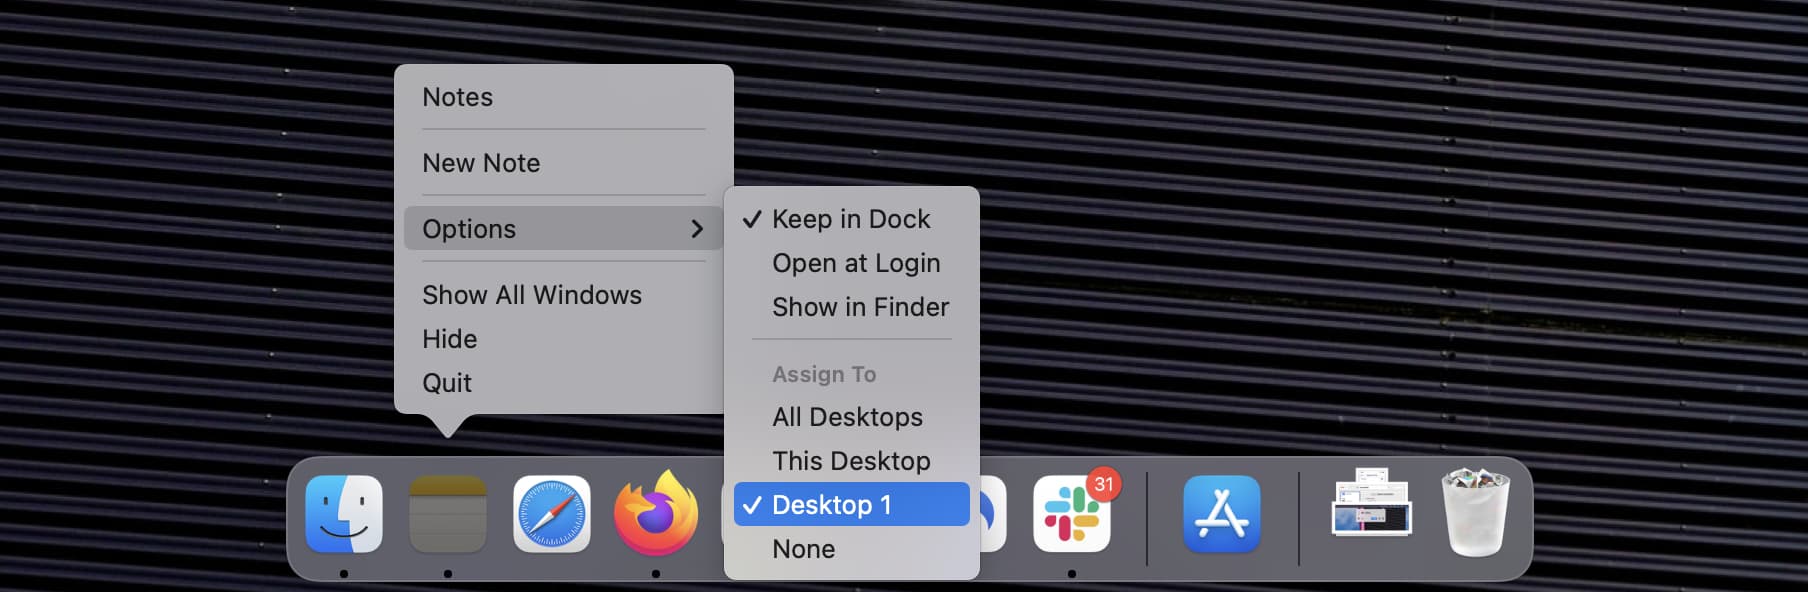 Assign To Desktop option in Mac Dock